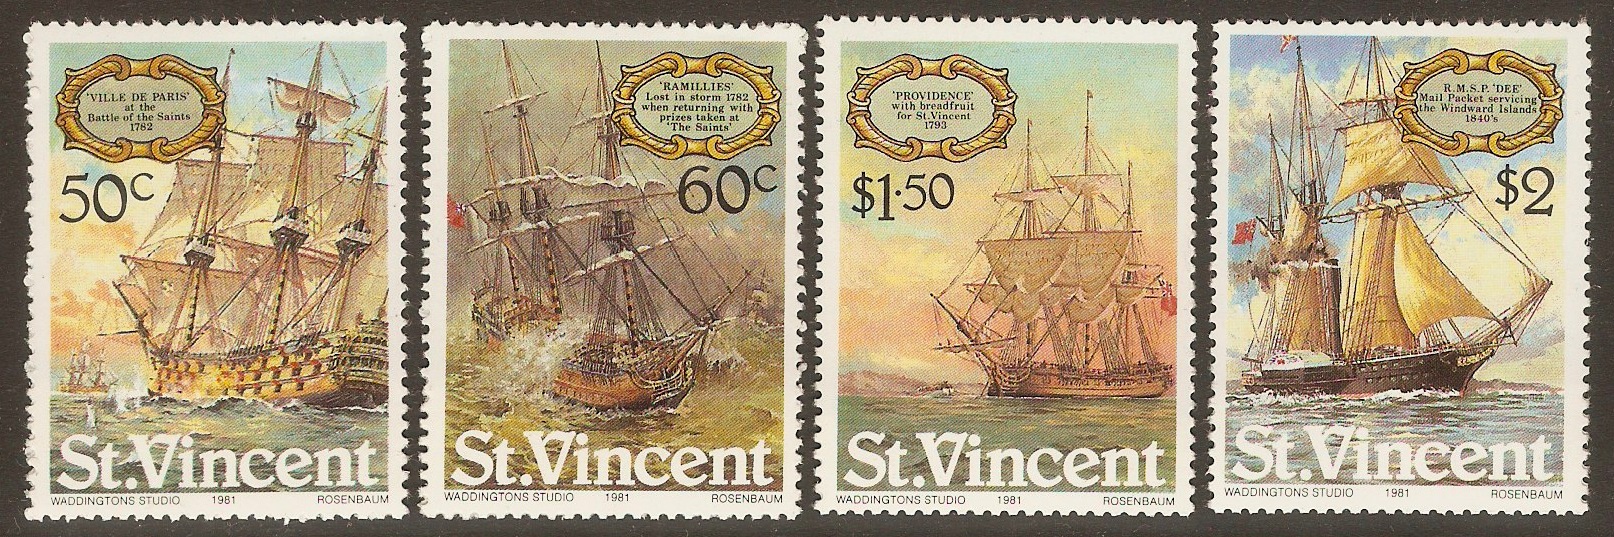 St Vincent 1981 Sailing Ships set. SG656-SG659.